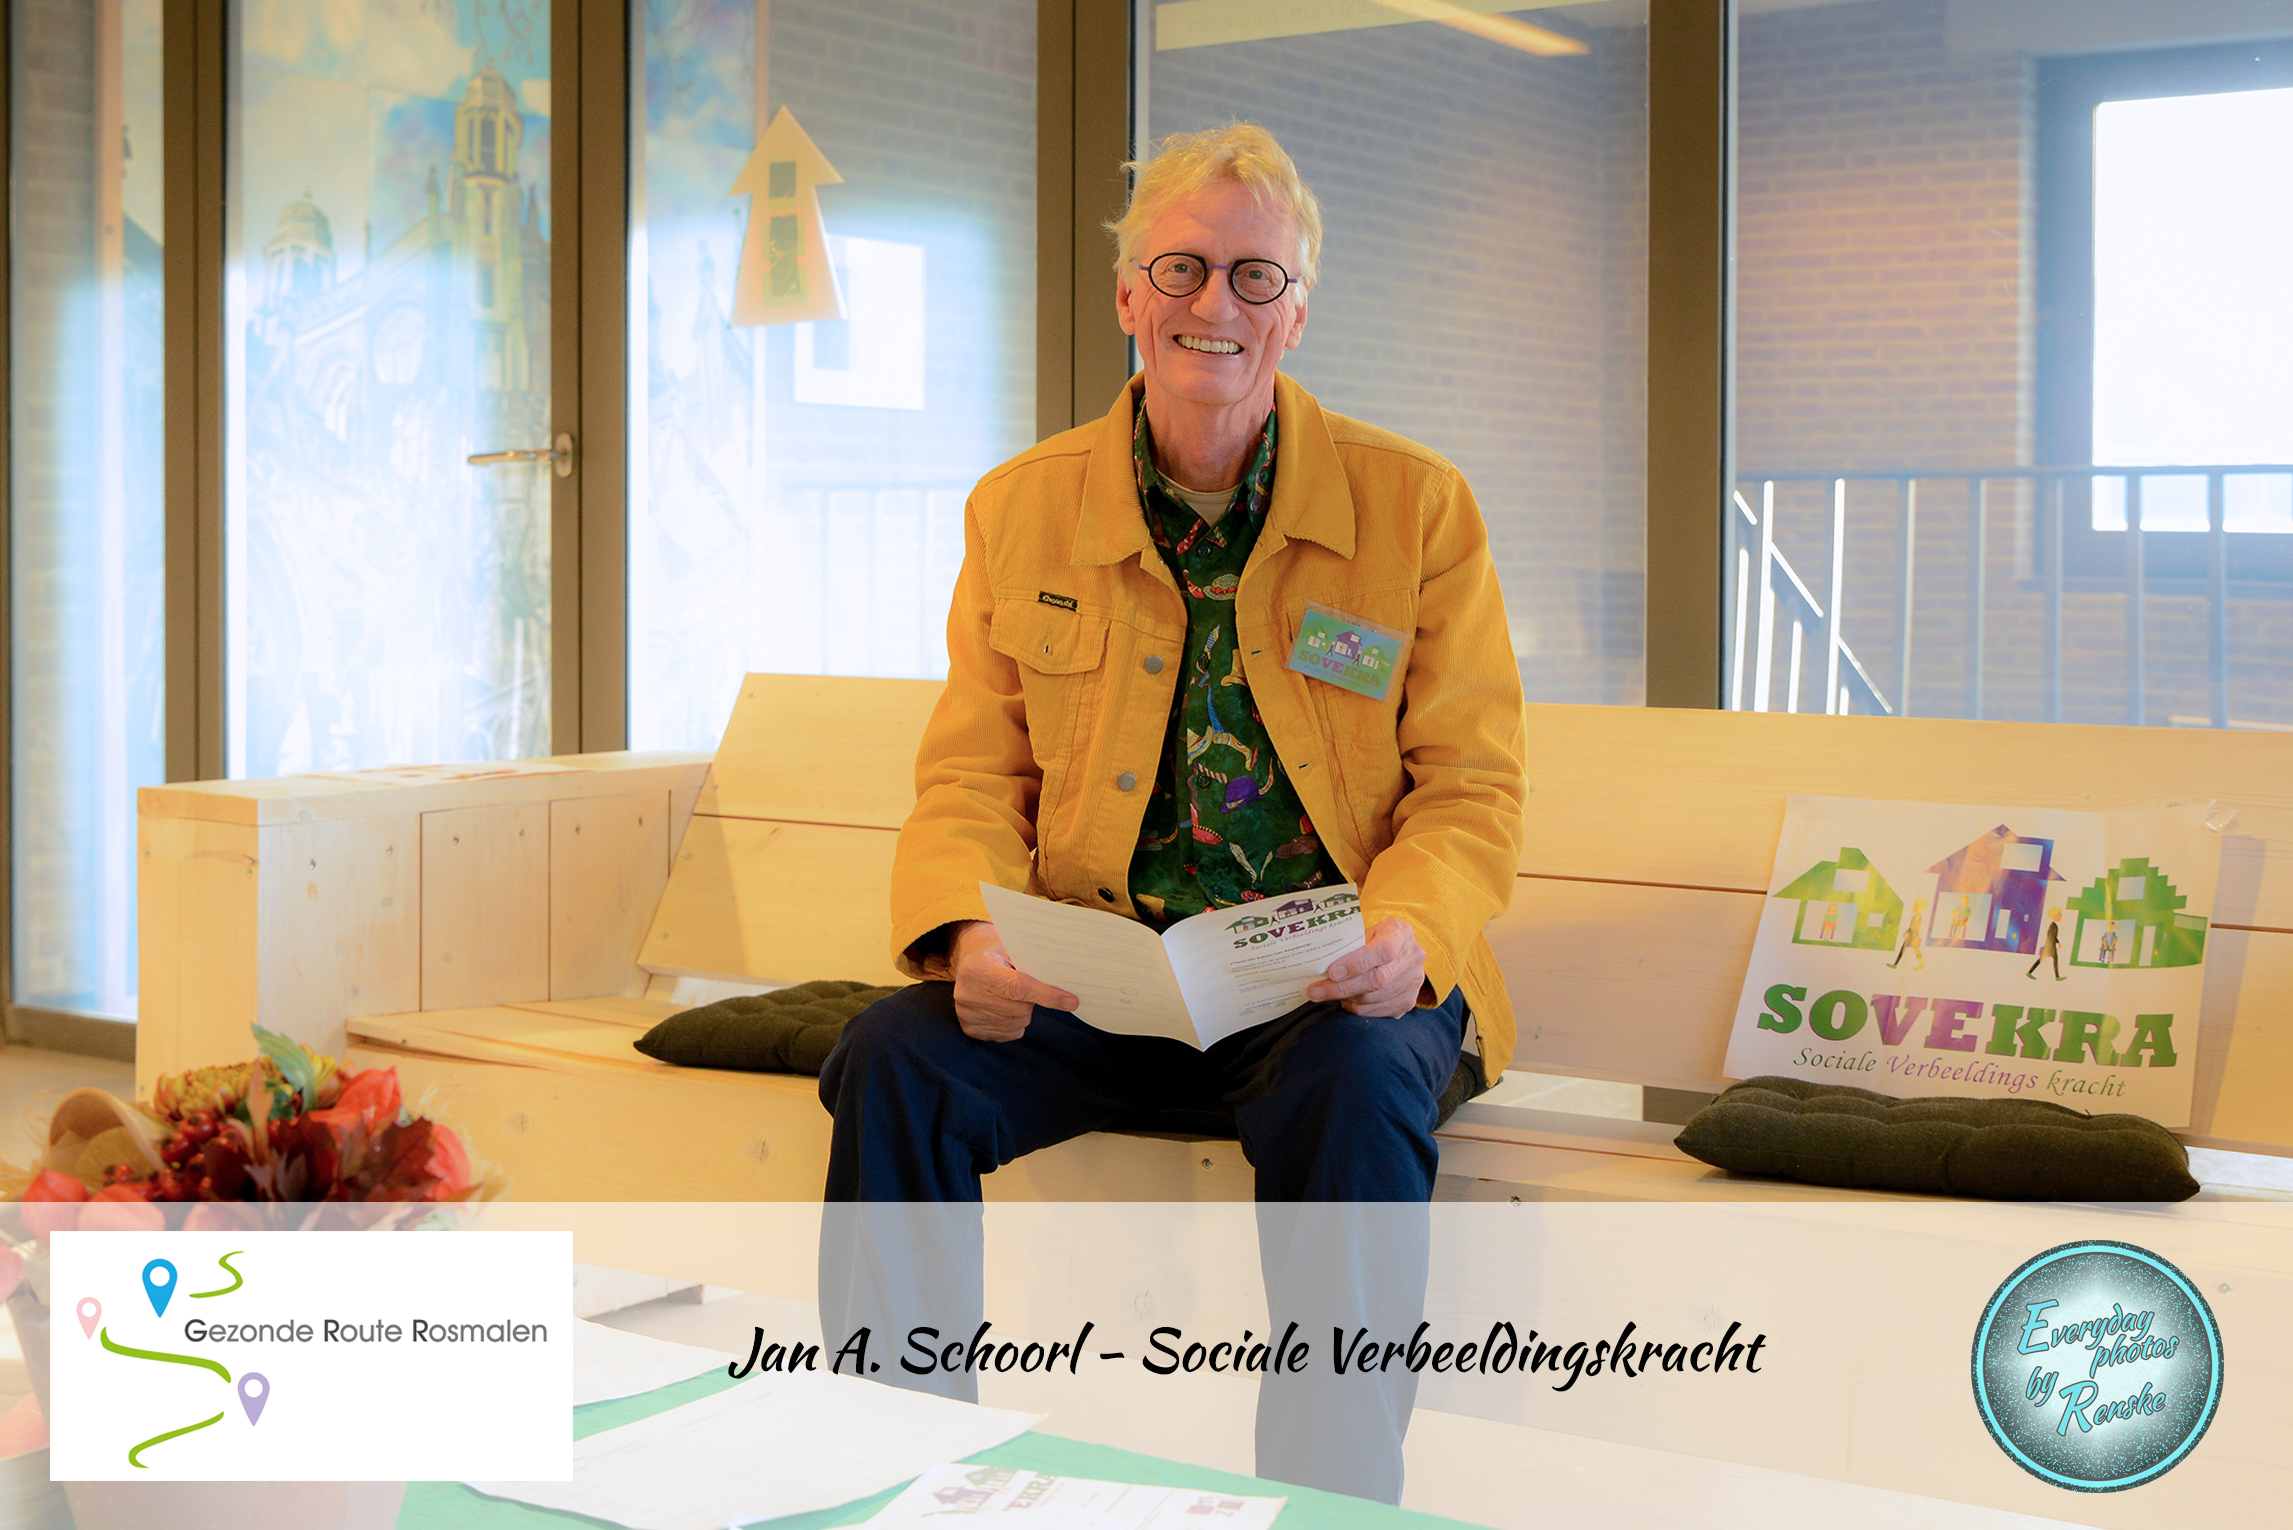 Jan A Schoorl - Sociale Verbeeldingskracht - Gezonde Route Rosmalen 2018